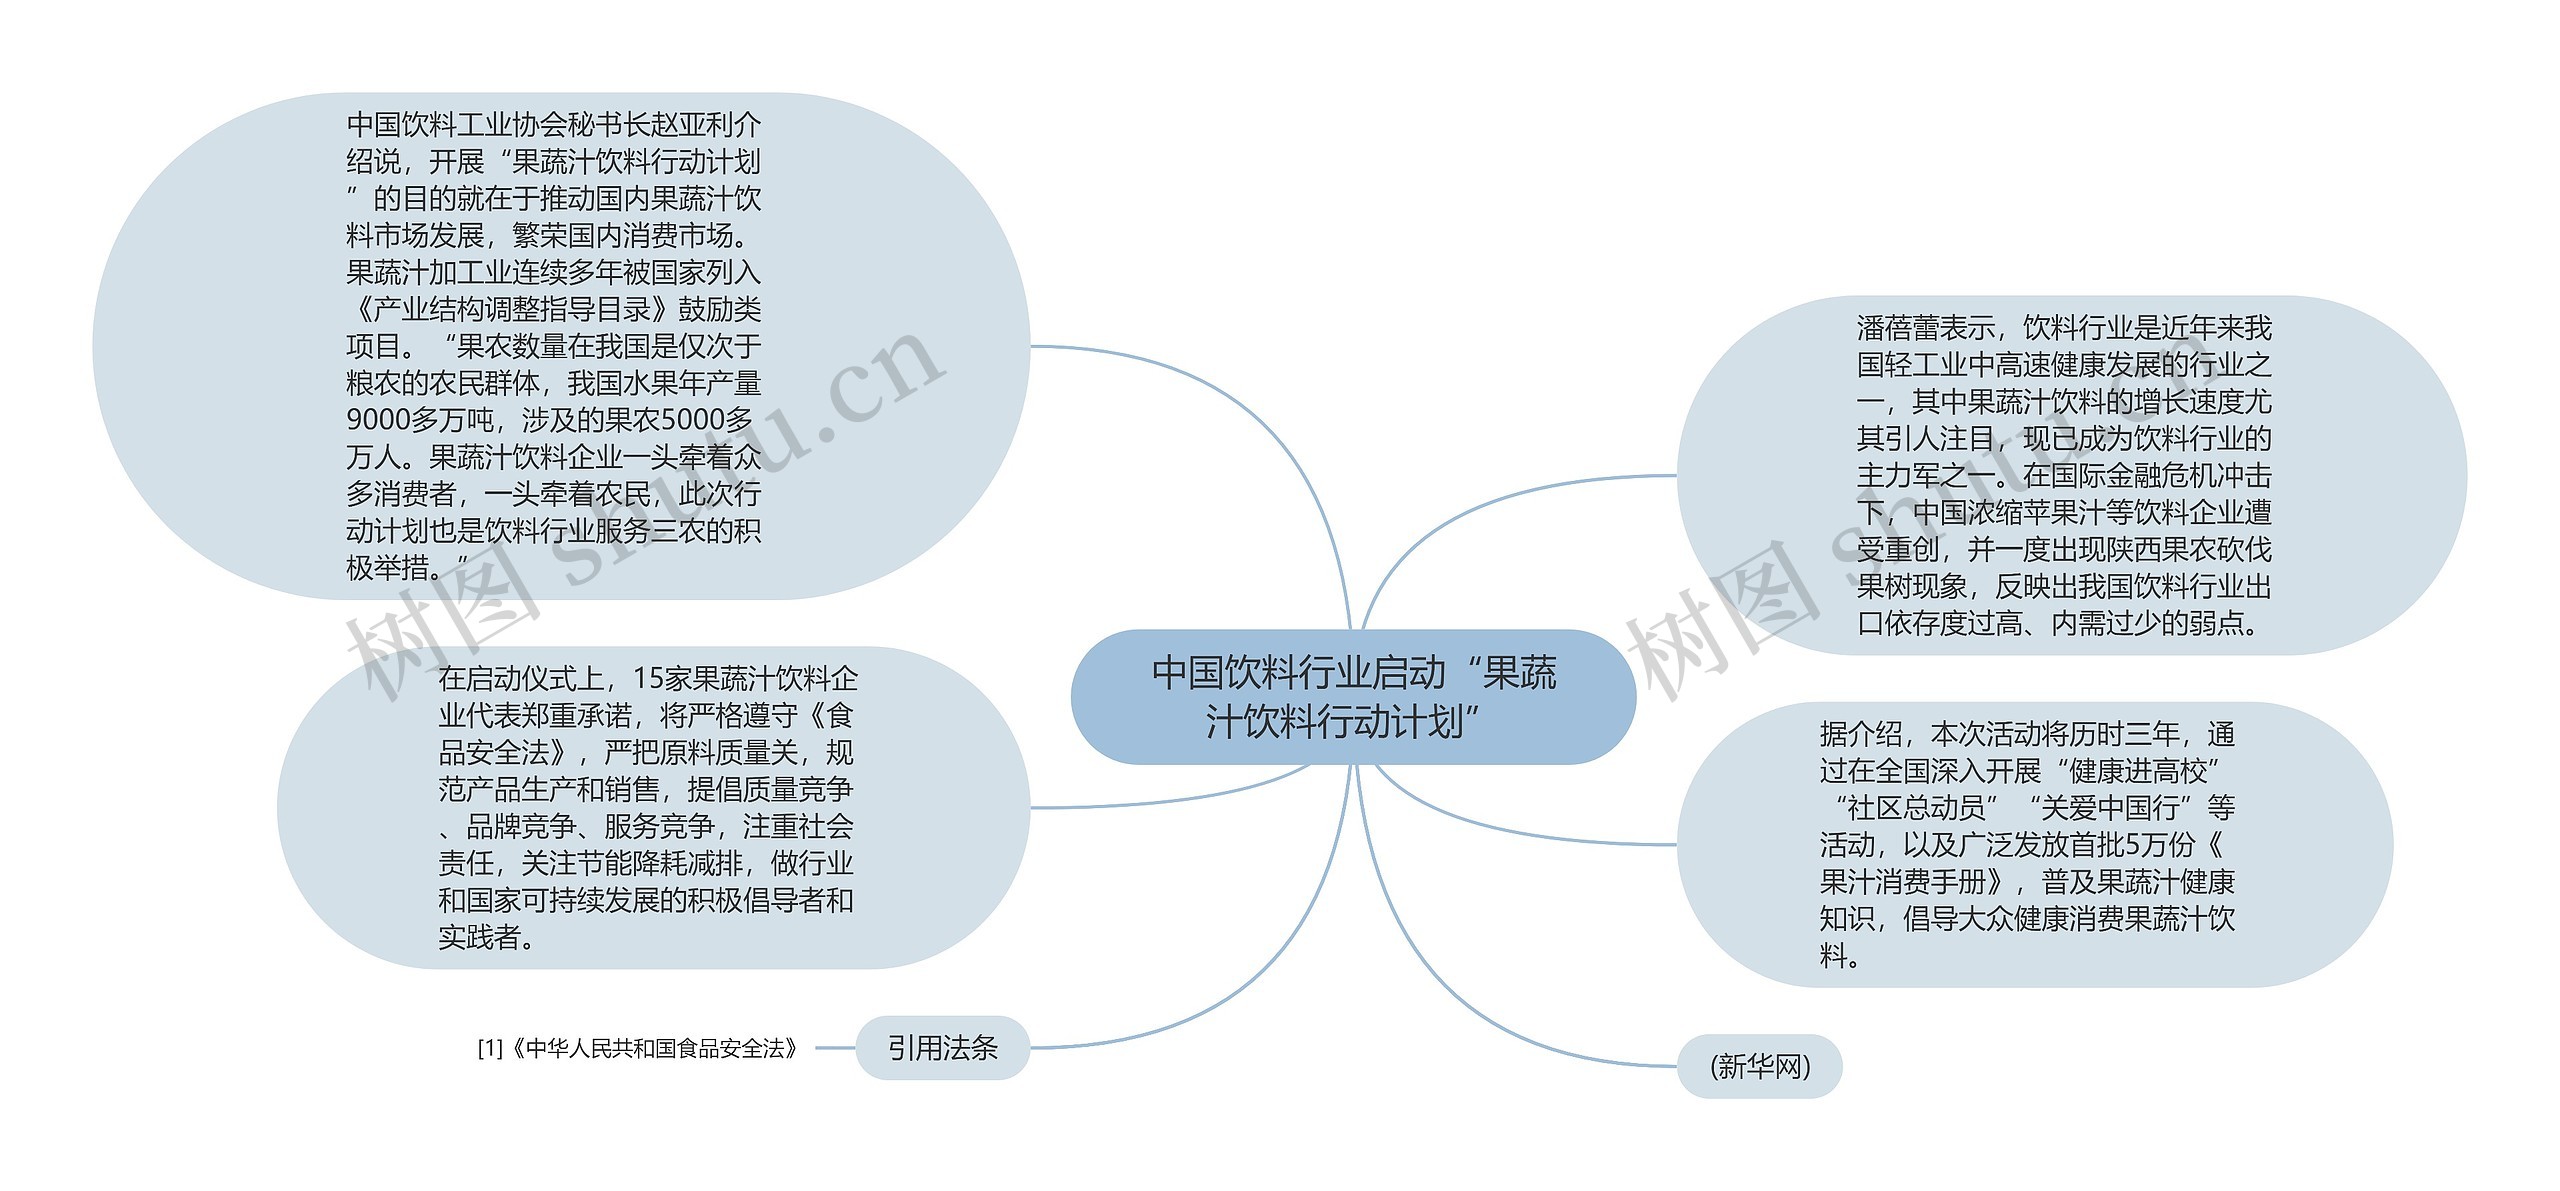 中国饮料行业启动“果蔬汁饮料行动计划”思维导图